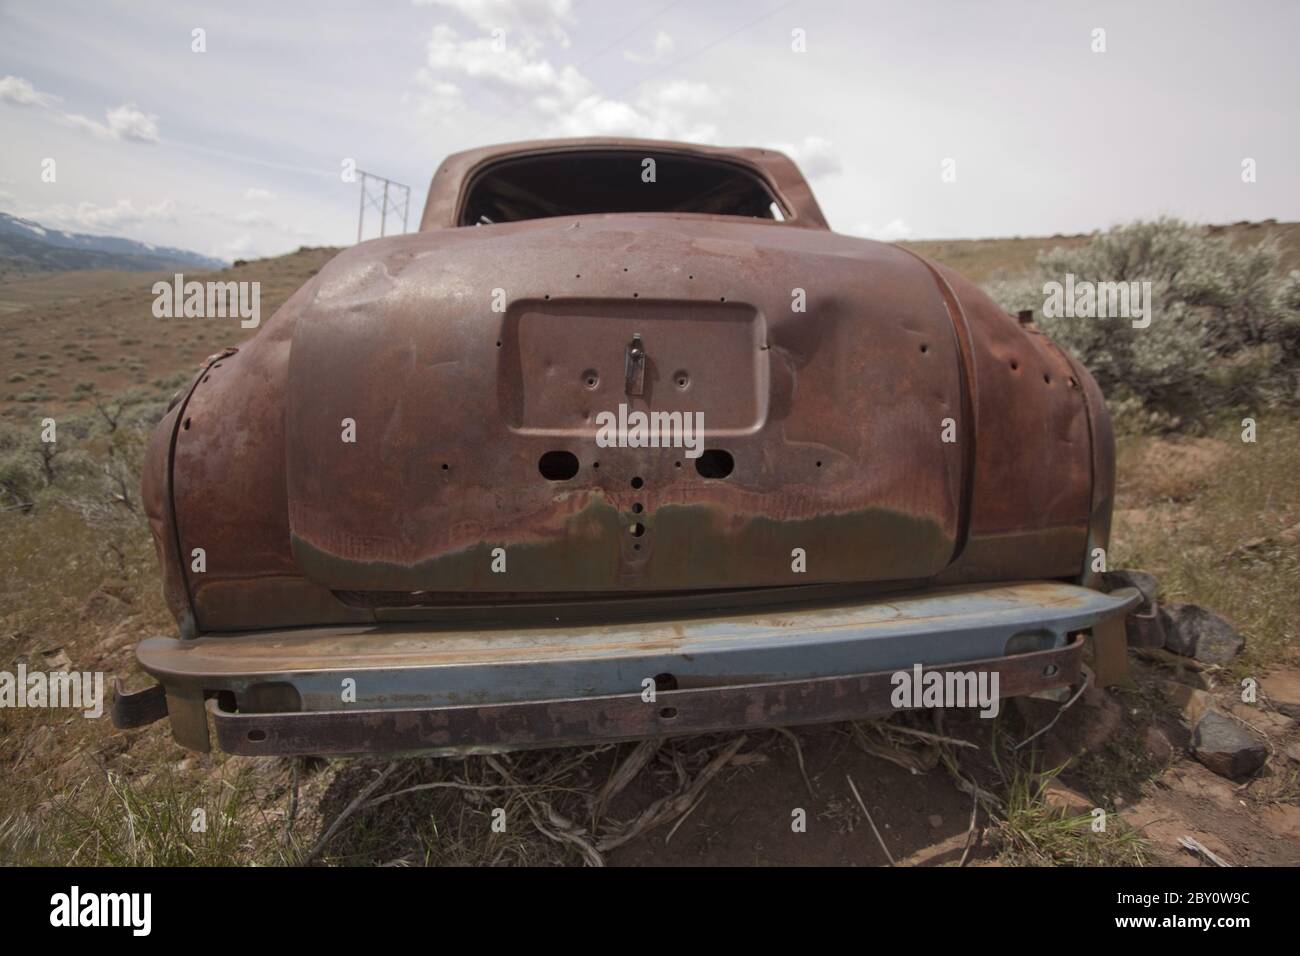 Vieille voiture abandonnée avec trous de balle Banque D'Images